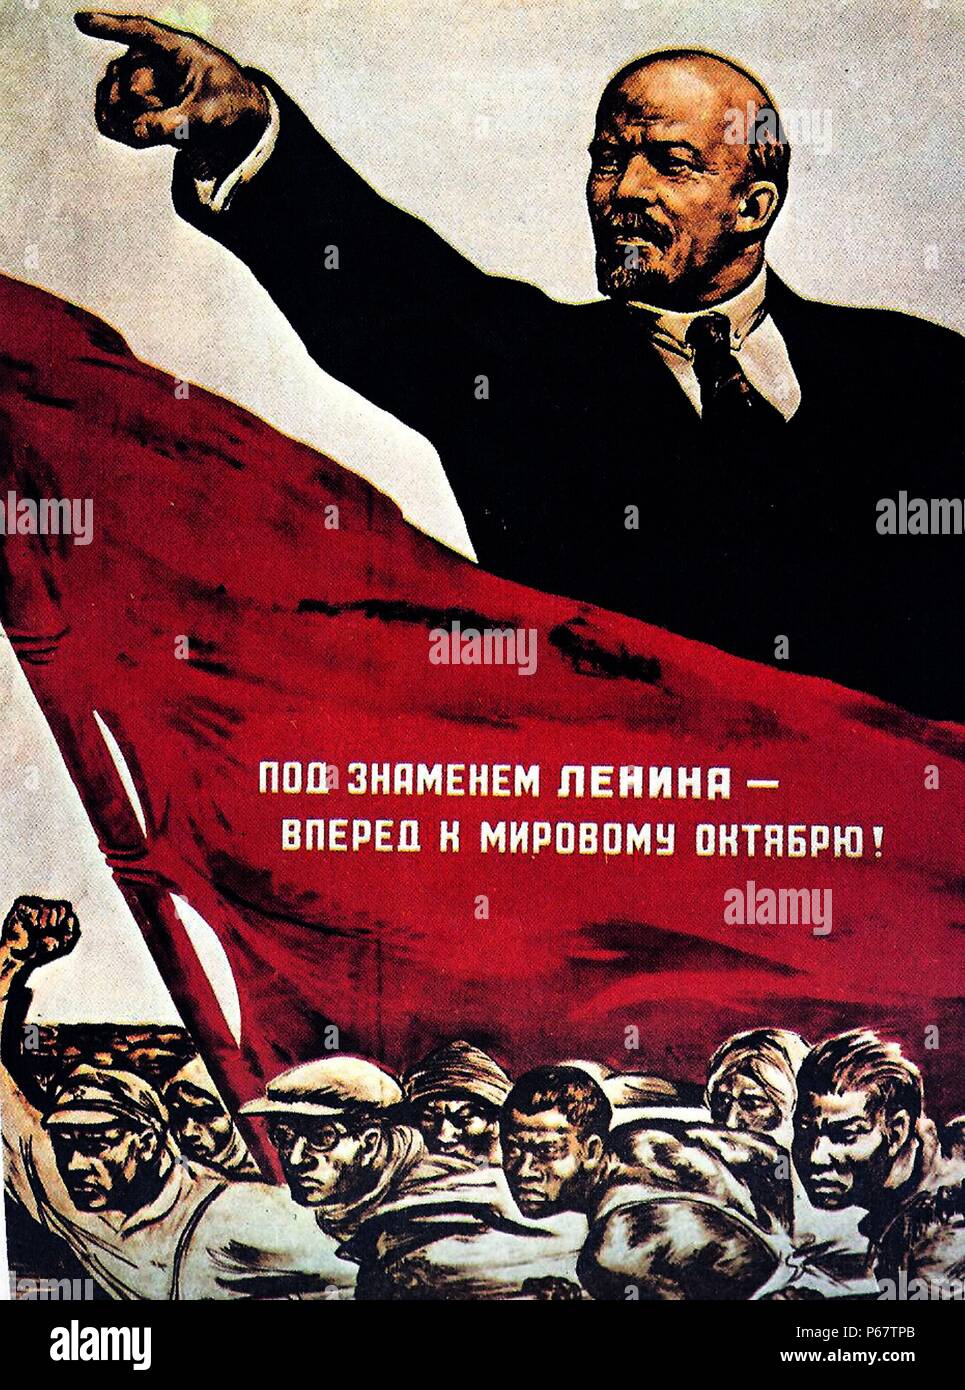 Russische Propaganda von der bolschewistischen Ära zeigt Lenin zeigt. Die Bolschewiki wurde die Kommunistische Partei der Sowjetunion und als sich die Führer der revolutionären Arbeiterklasse Russlands. Stockfoto